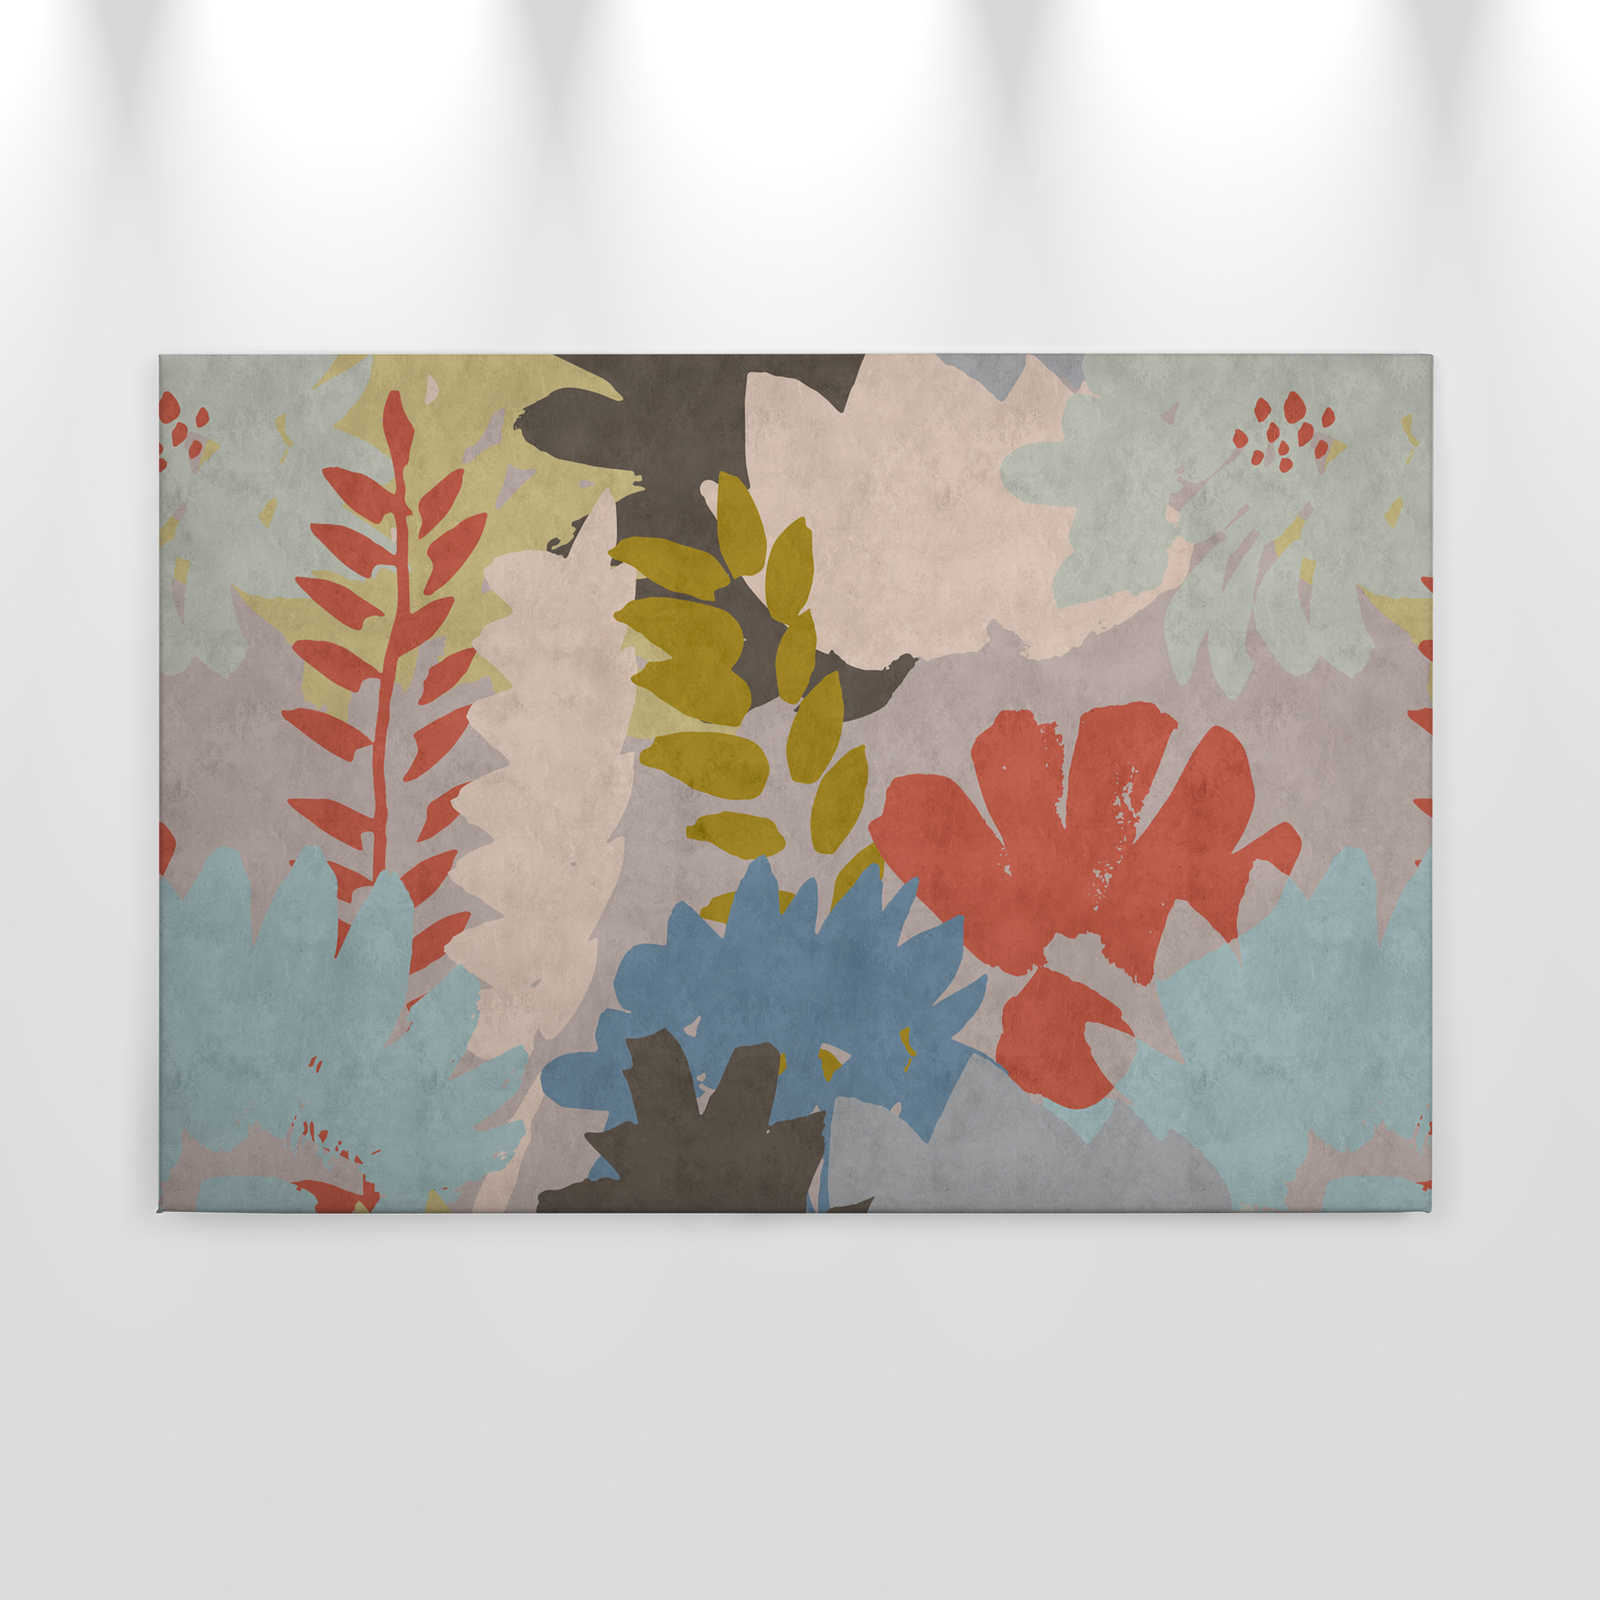             Floral Collage 3 - Tableau abstrait sur toile avec structure en papier buvard et motif de feuilles - 0,90 m x 0,60 m
        